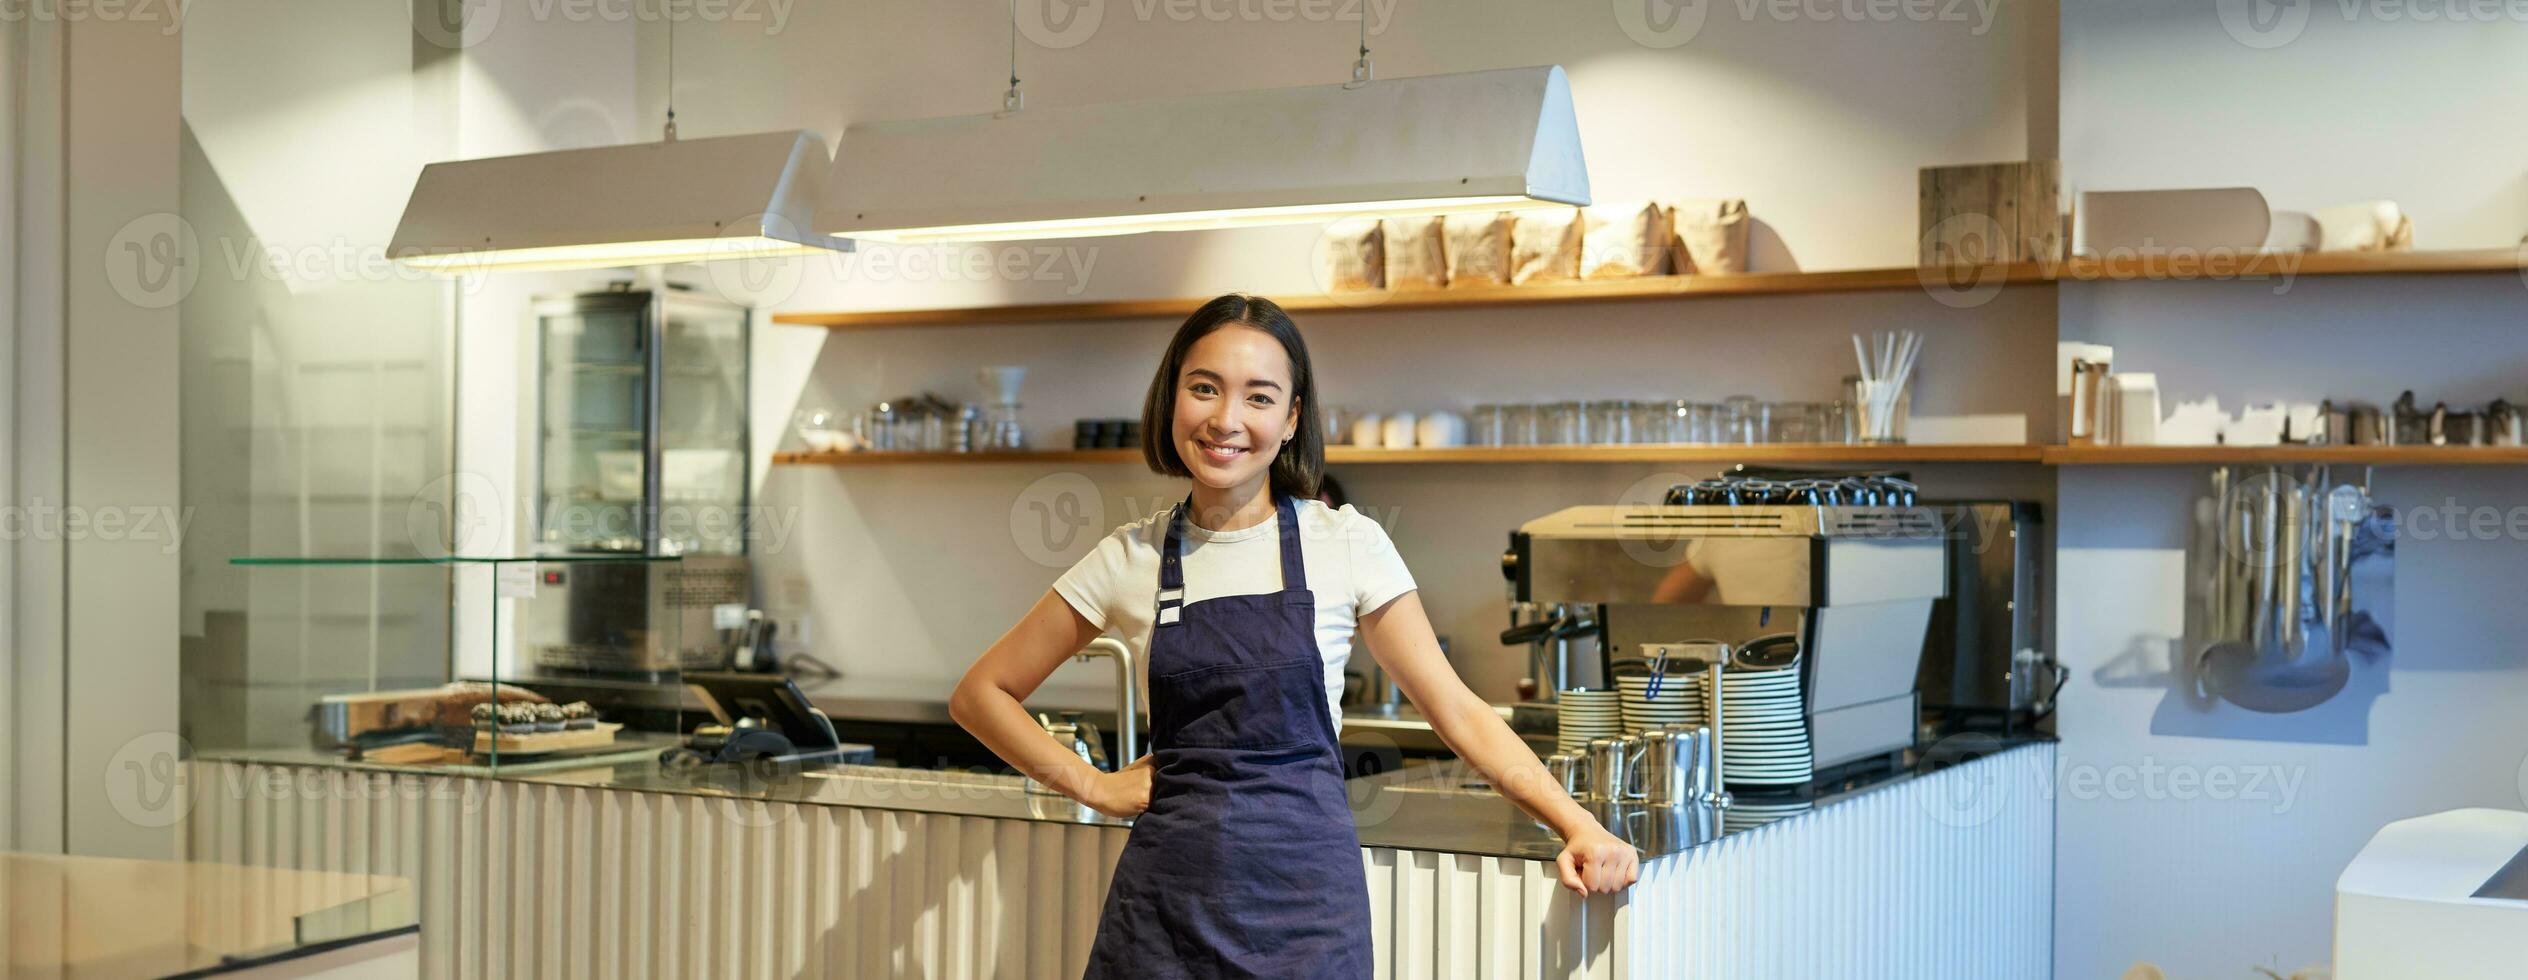 retrato de linda asiático mujer barista, café personal en pie cerca mostrador con café máquina, vistiendo delantal, sonriente a cámara foto